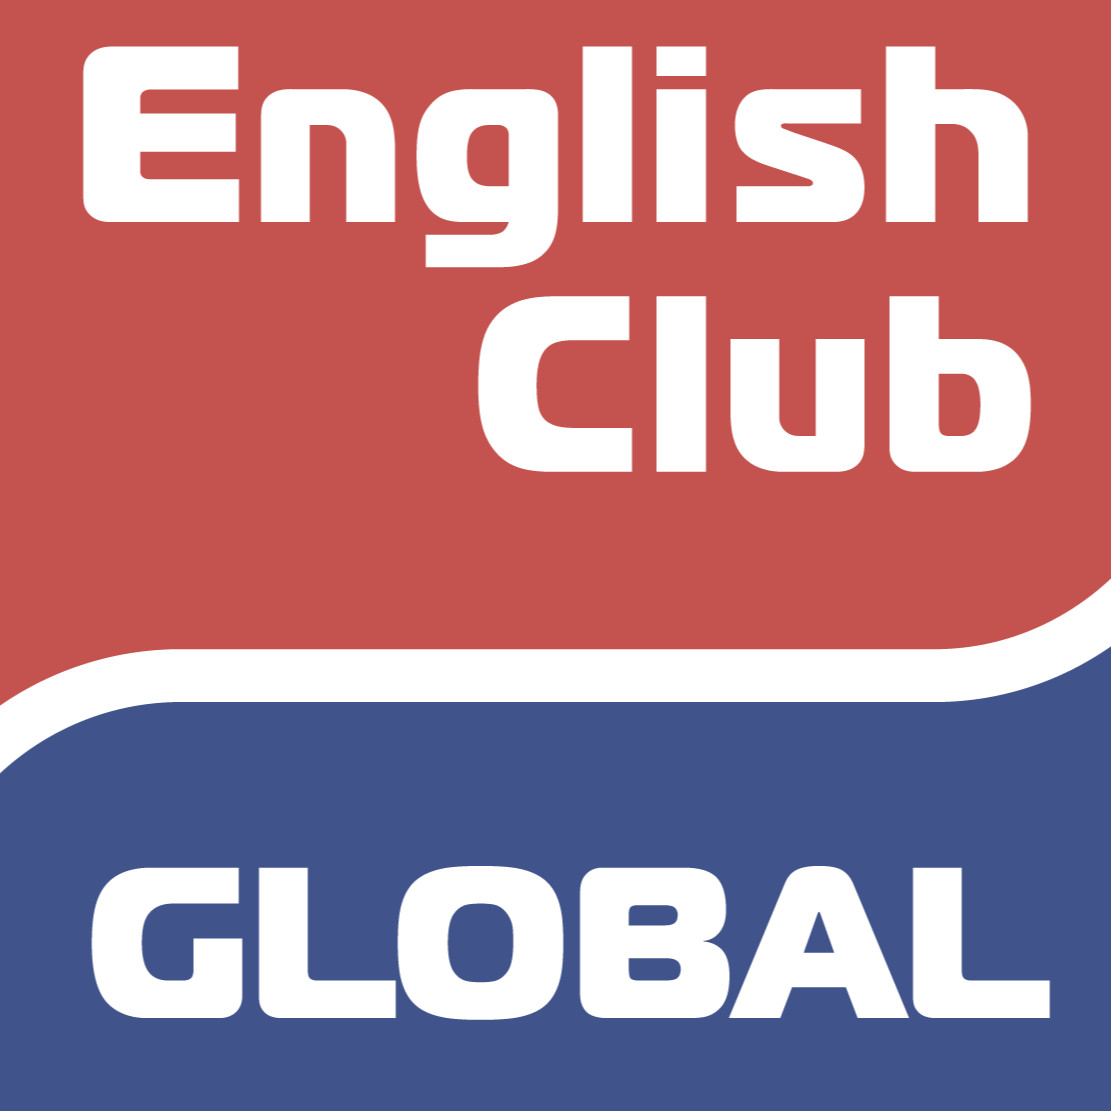 English Club Global  - образовательные мероприятия,  онлайн трансляции, видео, консультации